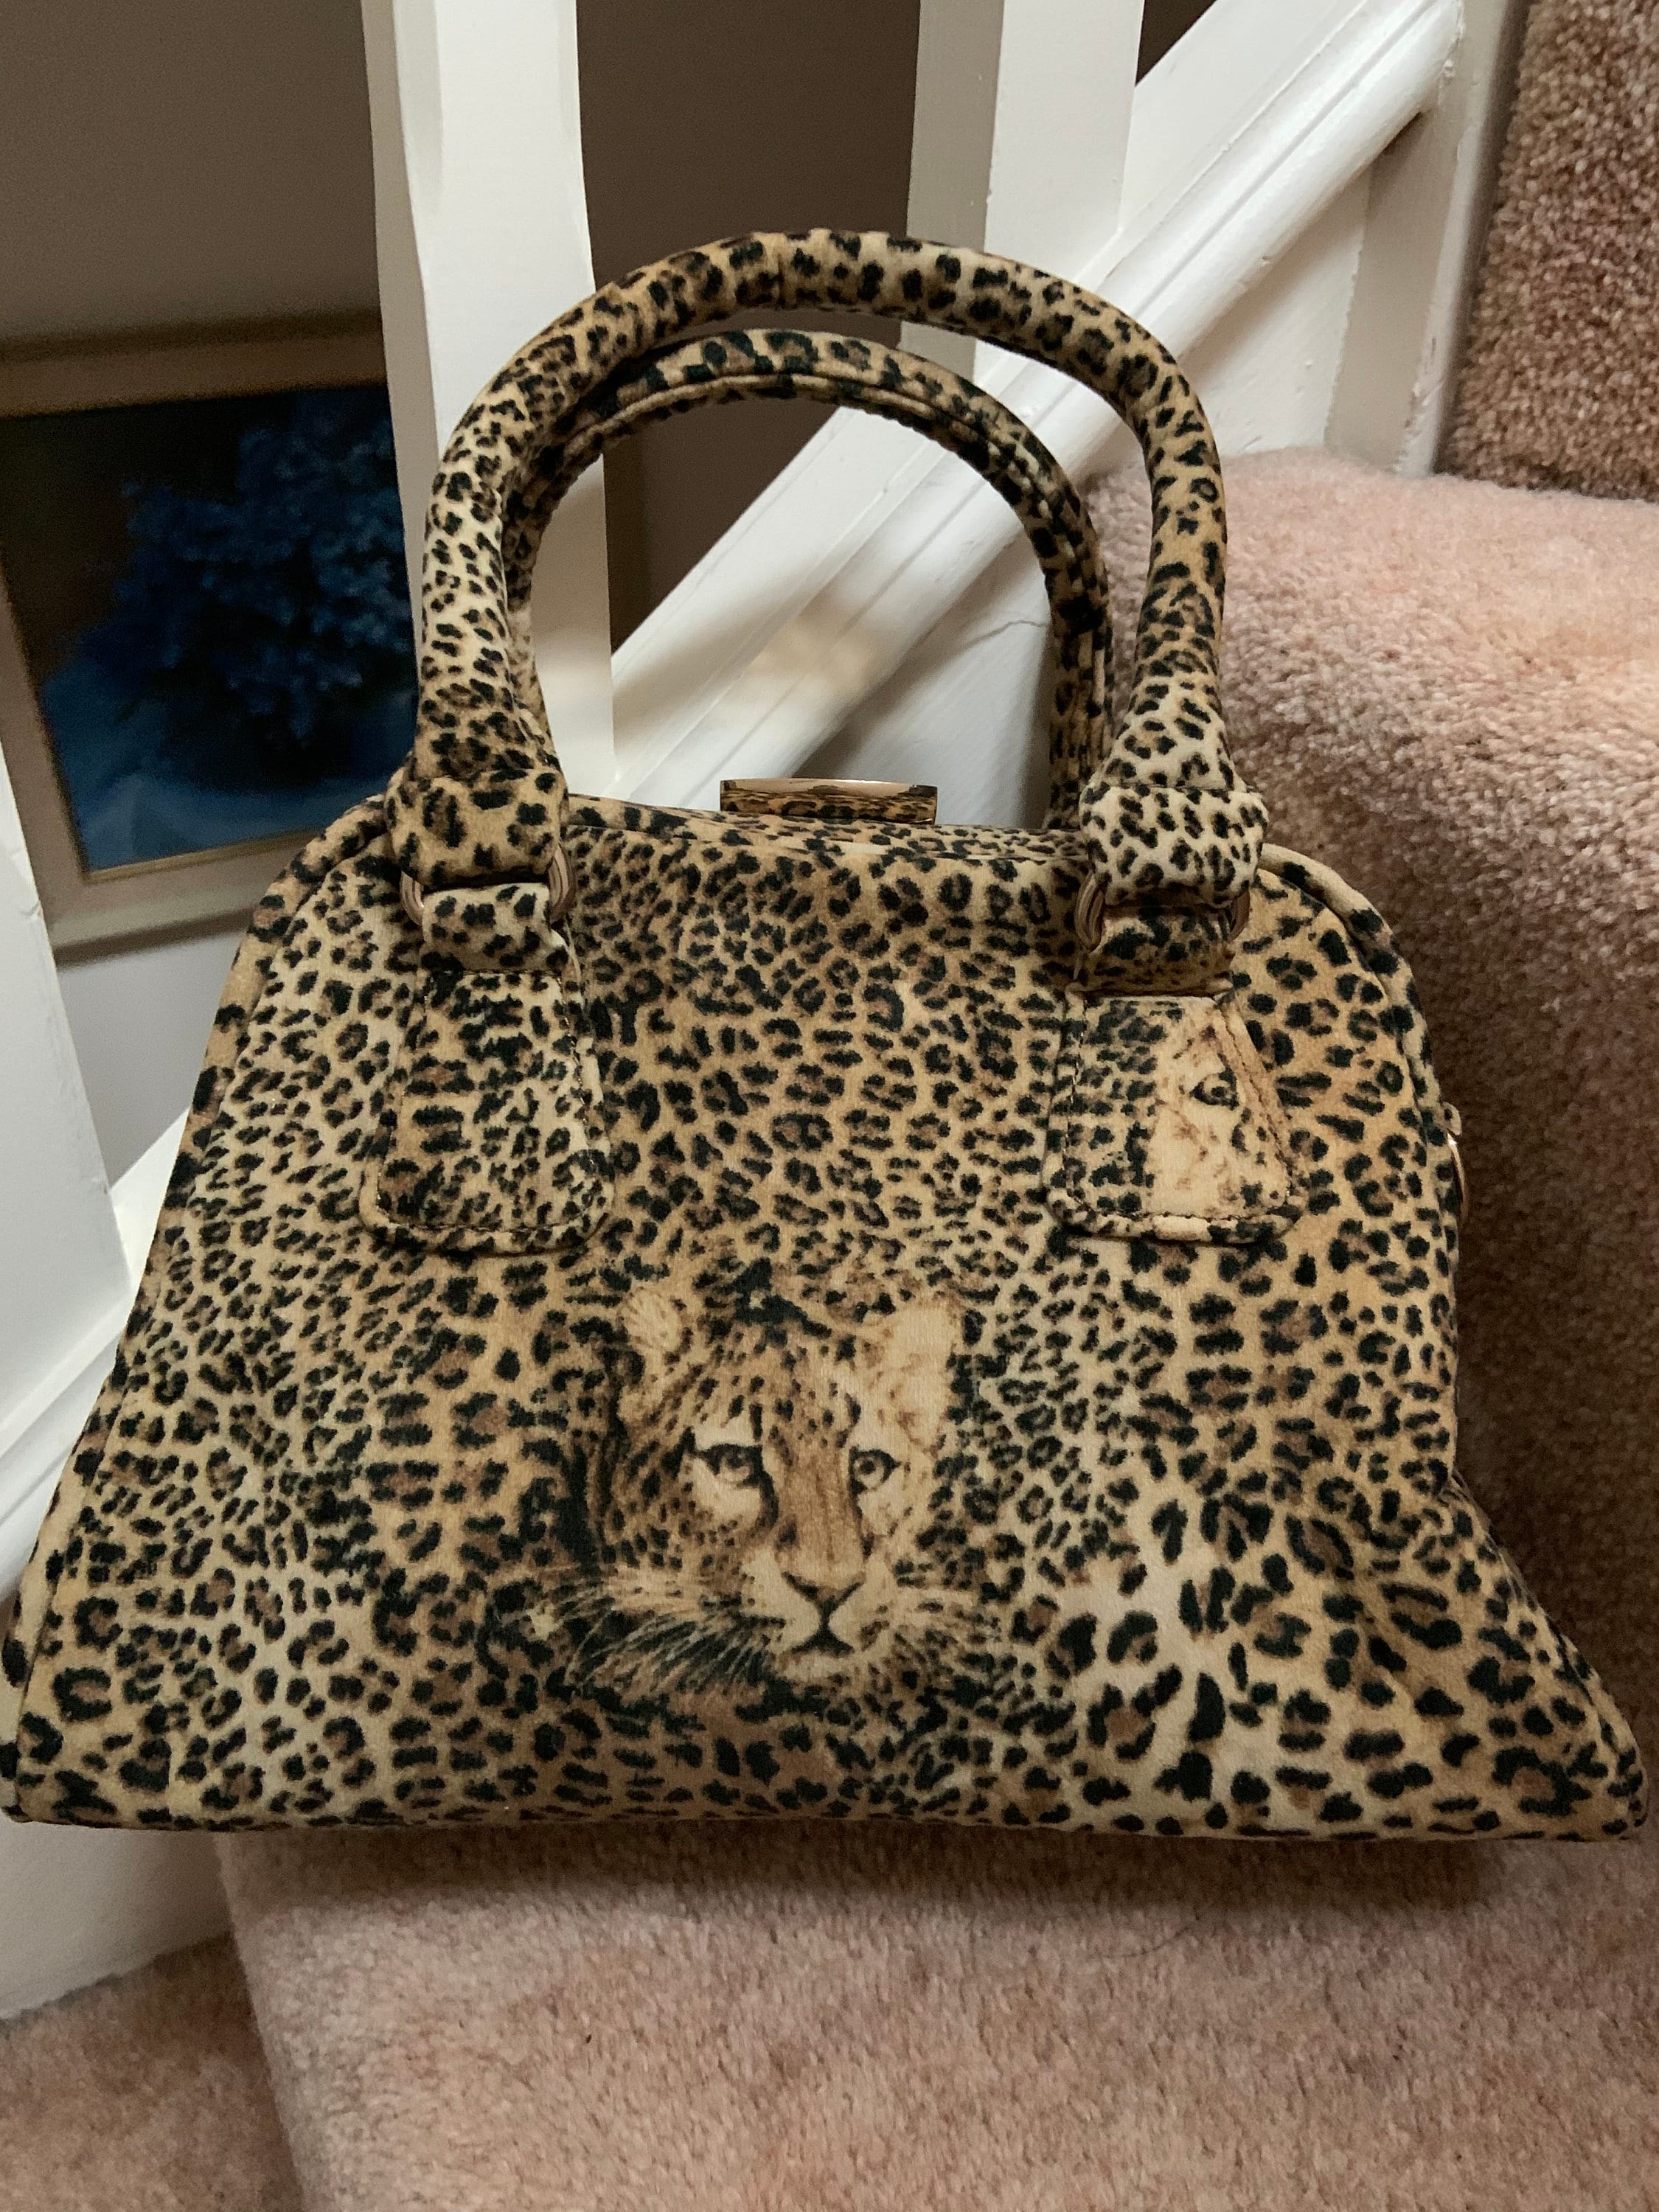 HOXIS Leopard Print Envelope Evening Clutch Women Chain Shoulder Bag